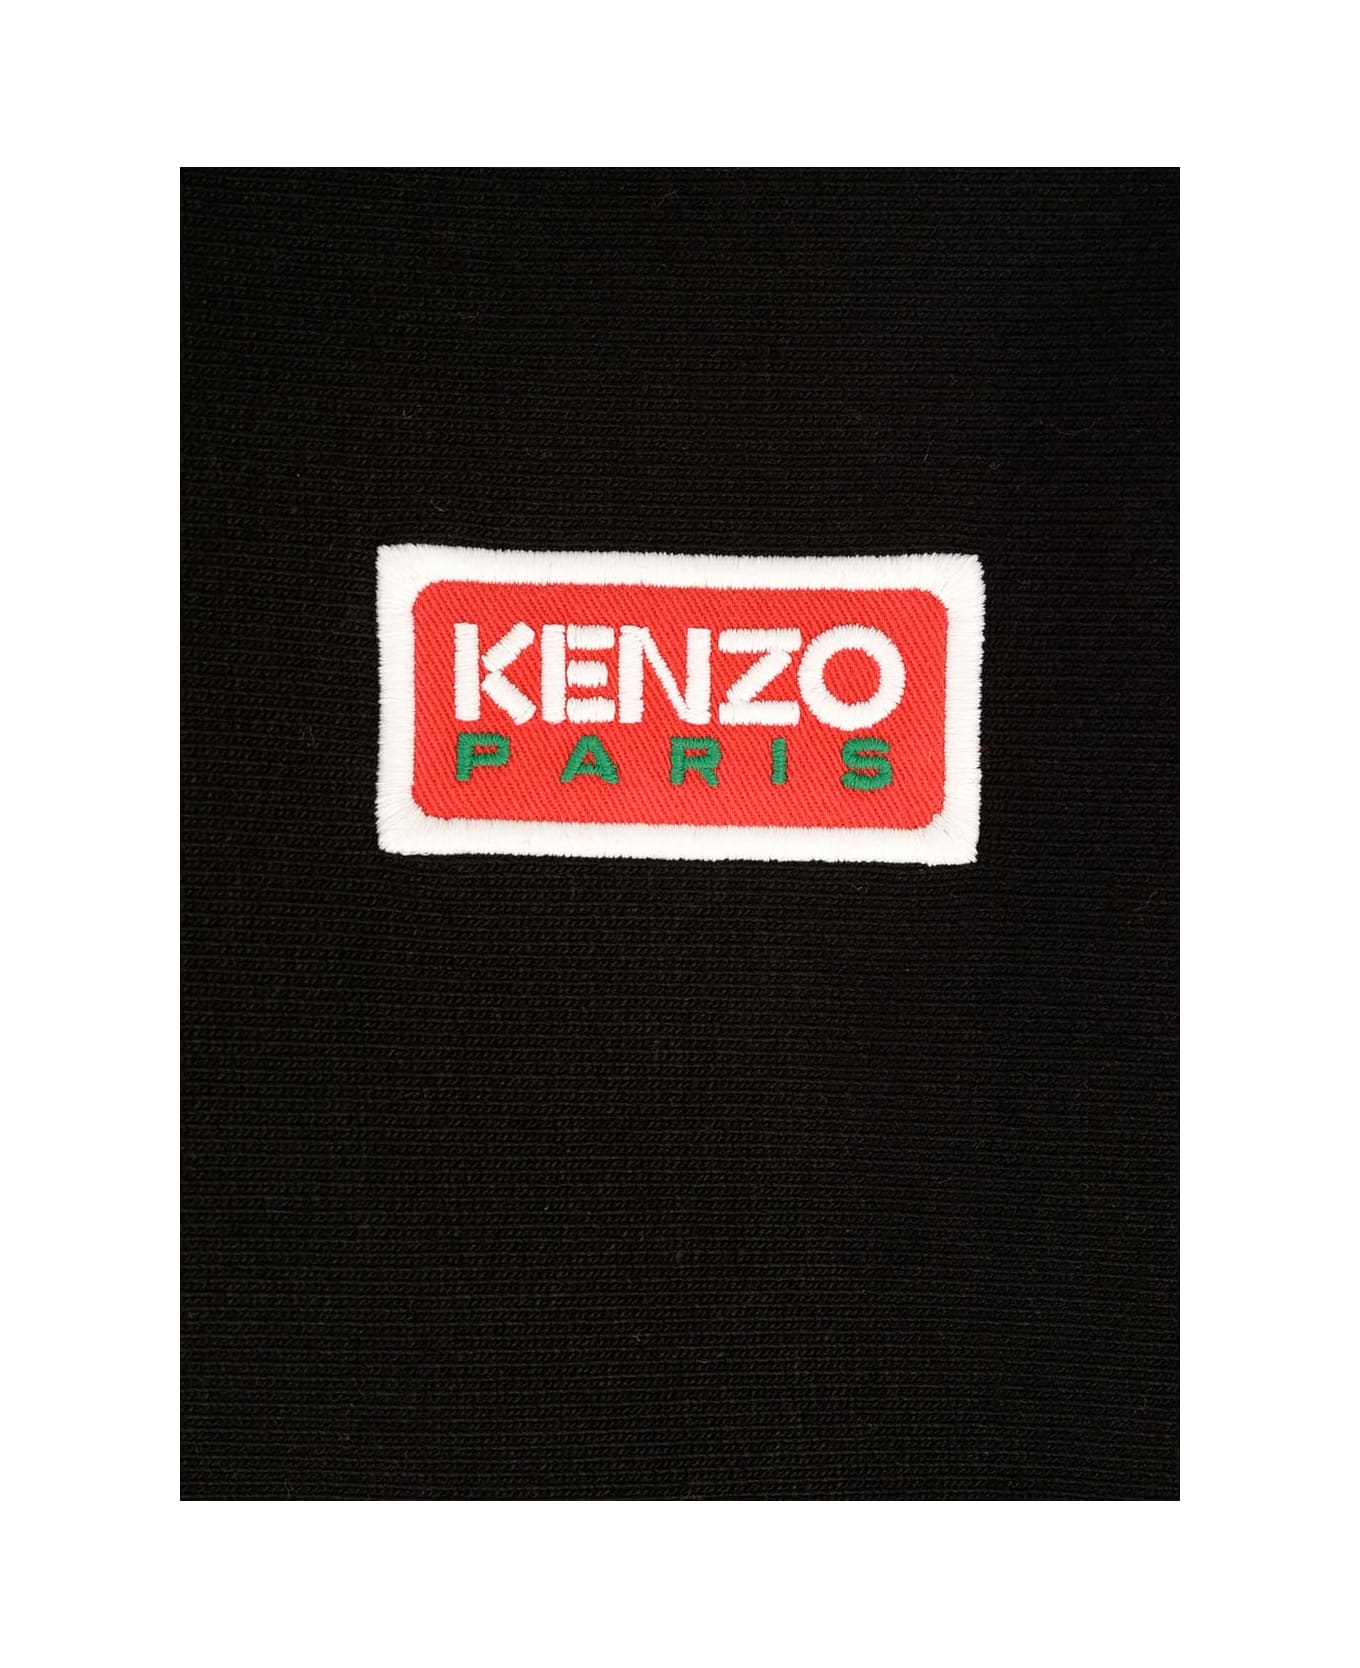 Kenzo Oversized Sweatshirt - Black